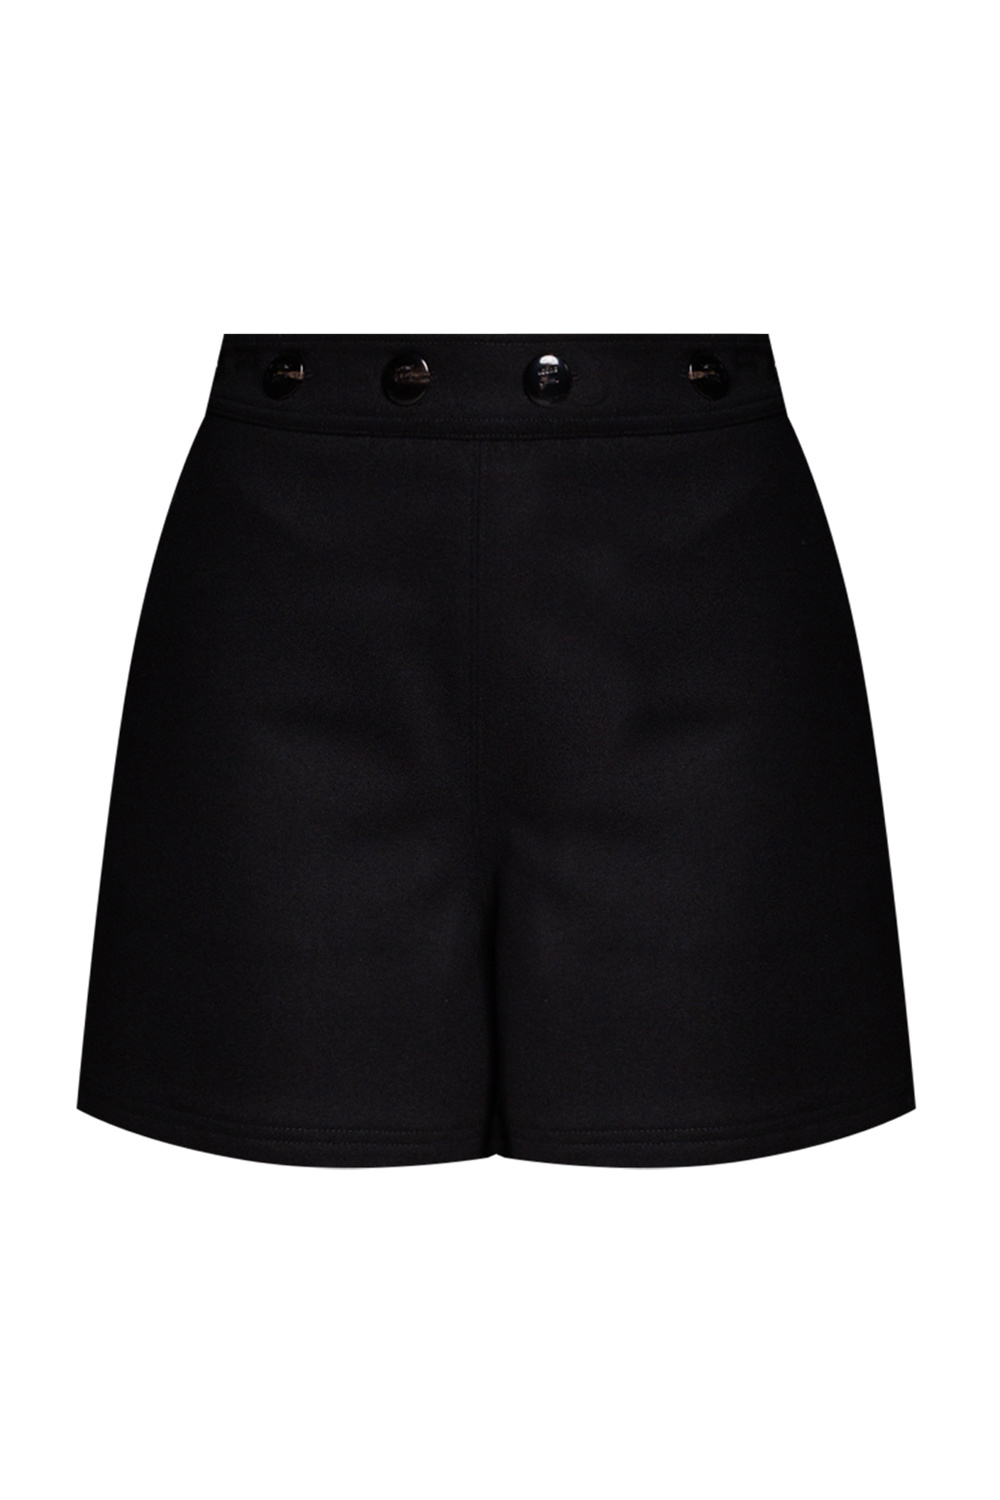 Loewe Wool shorts | Women's Clothing | Vitkac